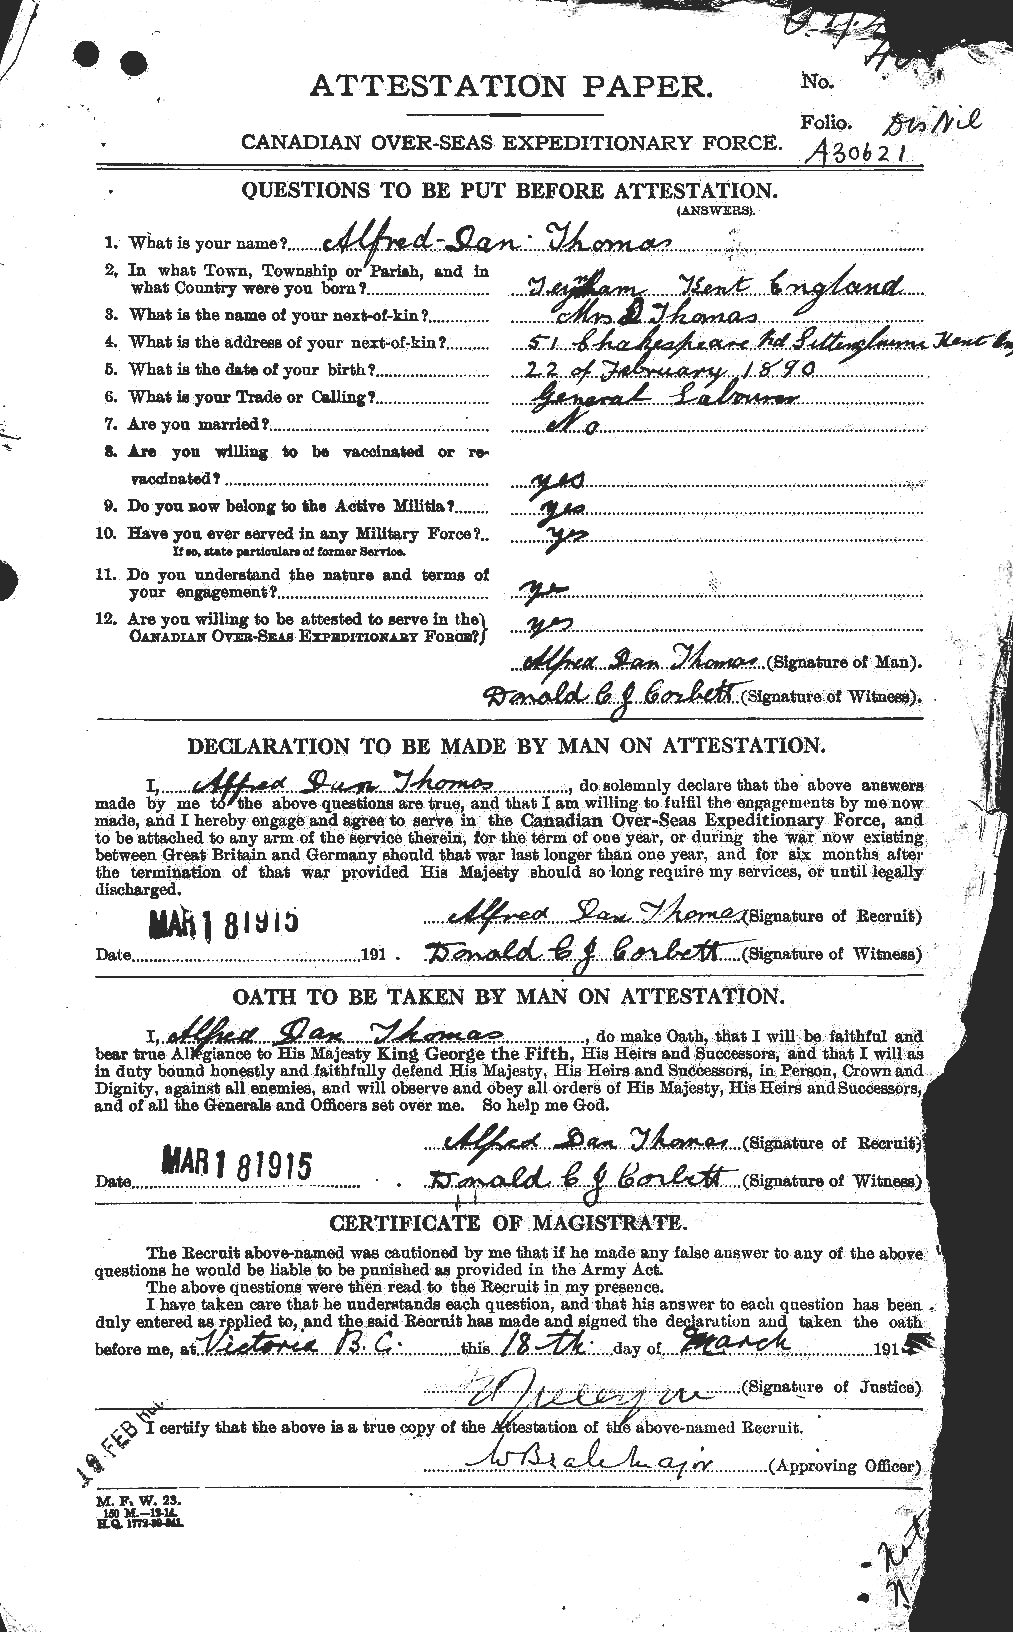 Dossiers du Personnel de la Première Guerre mondiale - CEC 631315a